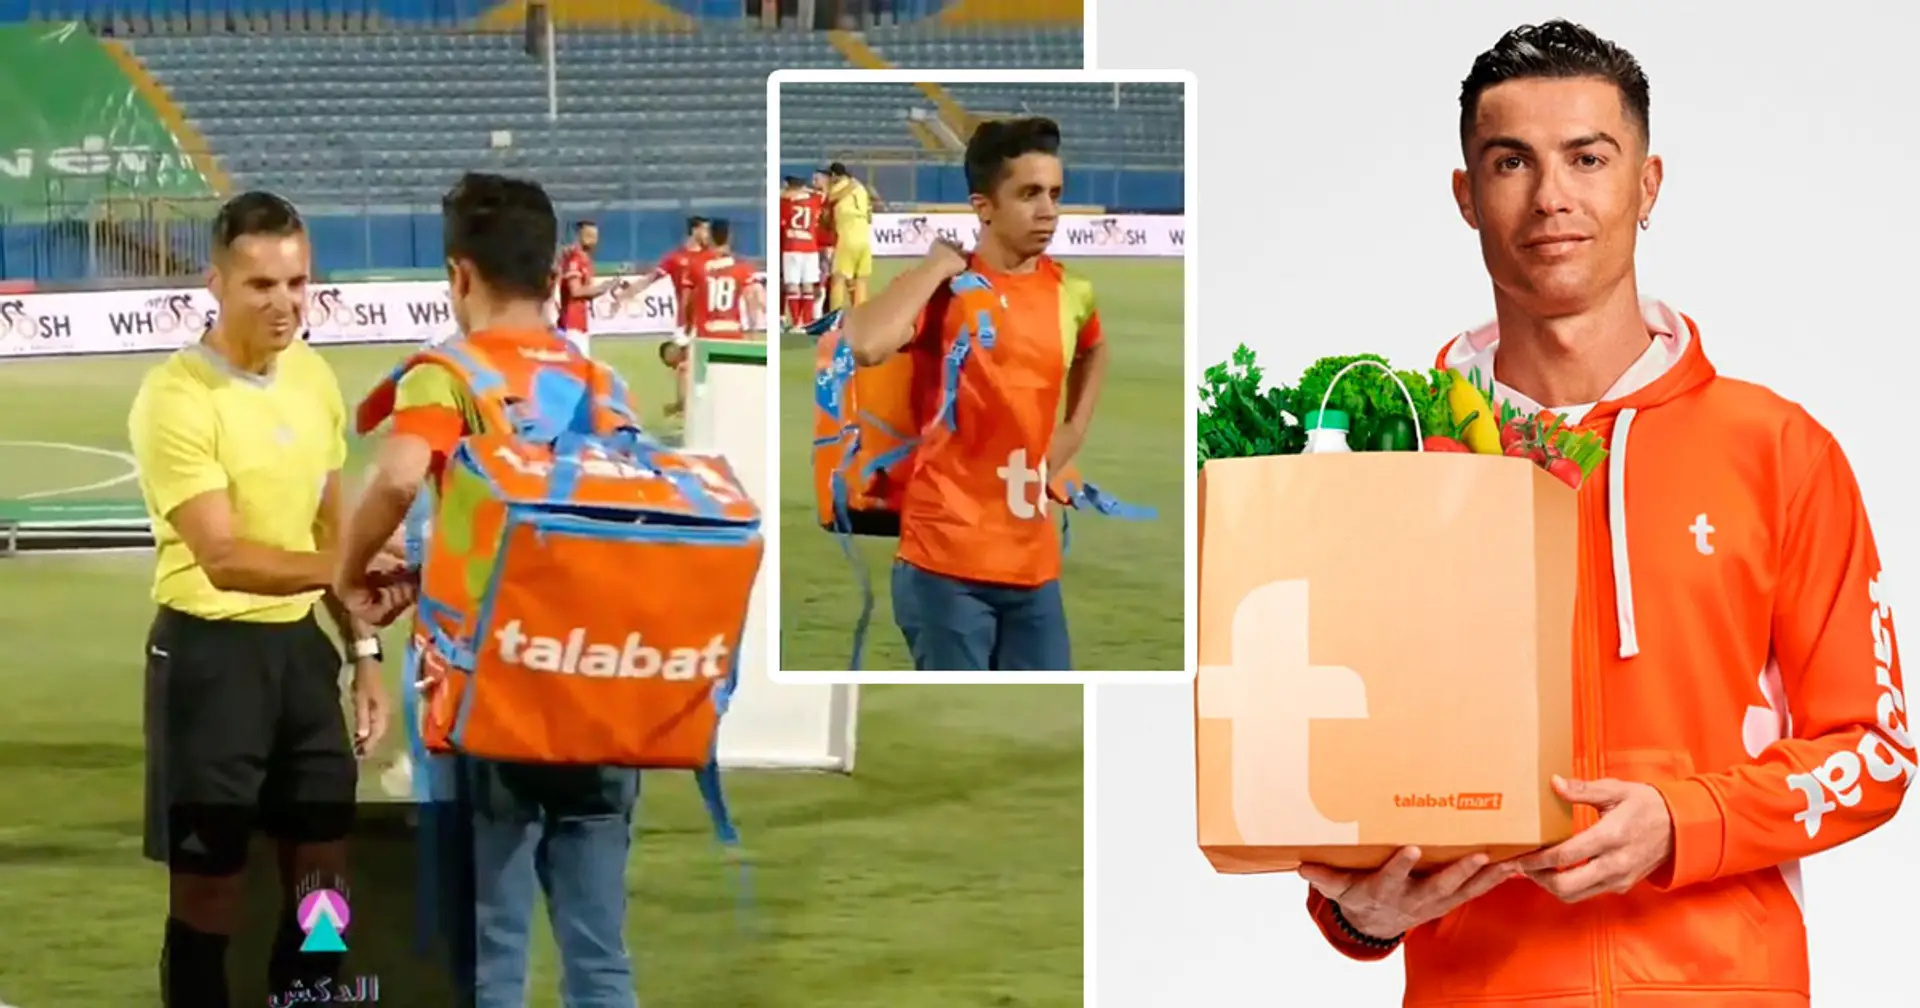 Un service de livraison de nourriture donne le coup d'envoi d'un match de championnat égyptien